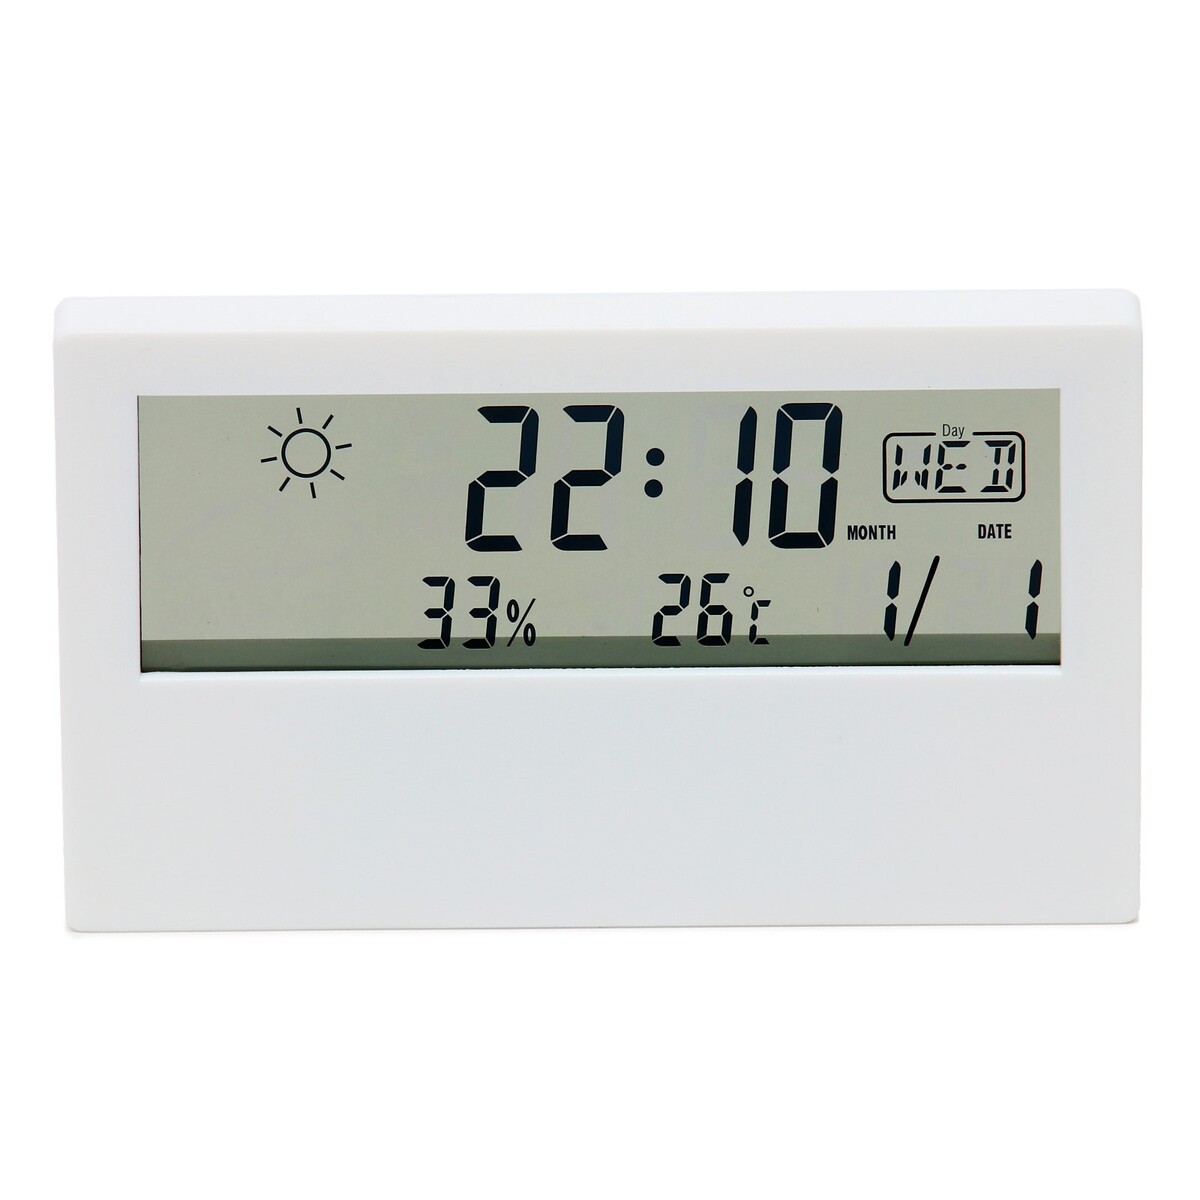 Часы настольные электронные: будильник, термометр, календарь, гигрометр, 13.3х7.4 см, белые часы настольные электронные с проекцией будильник гигрометр календарь зеленые цифры